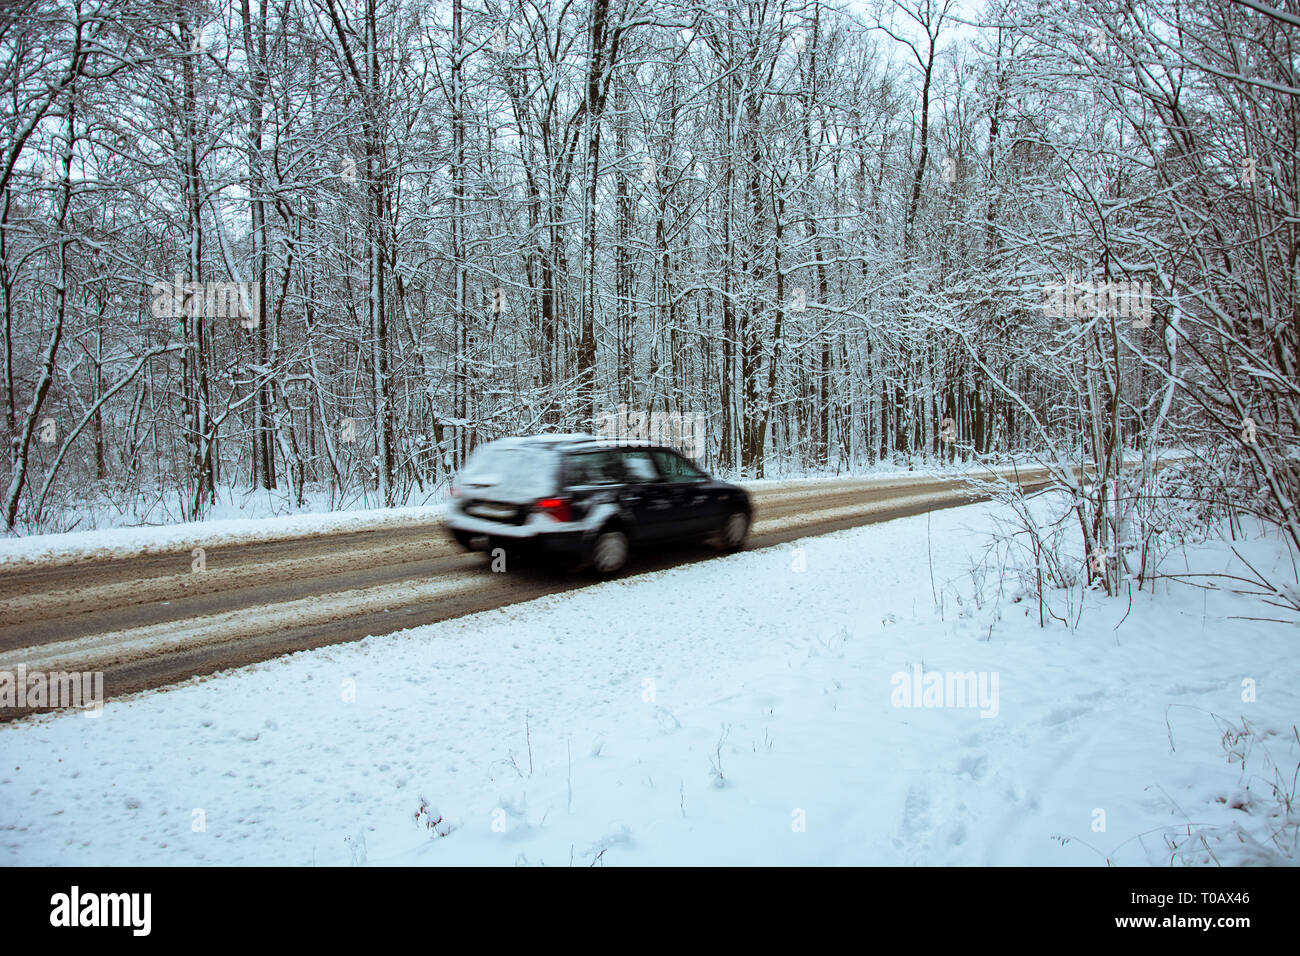 Voiture rapidement conduire à travers les bois jusqu'à la route asphaltée recouverte de neige - une vue floue de la voiture Banque D'Images